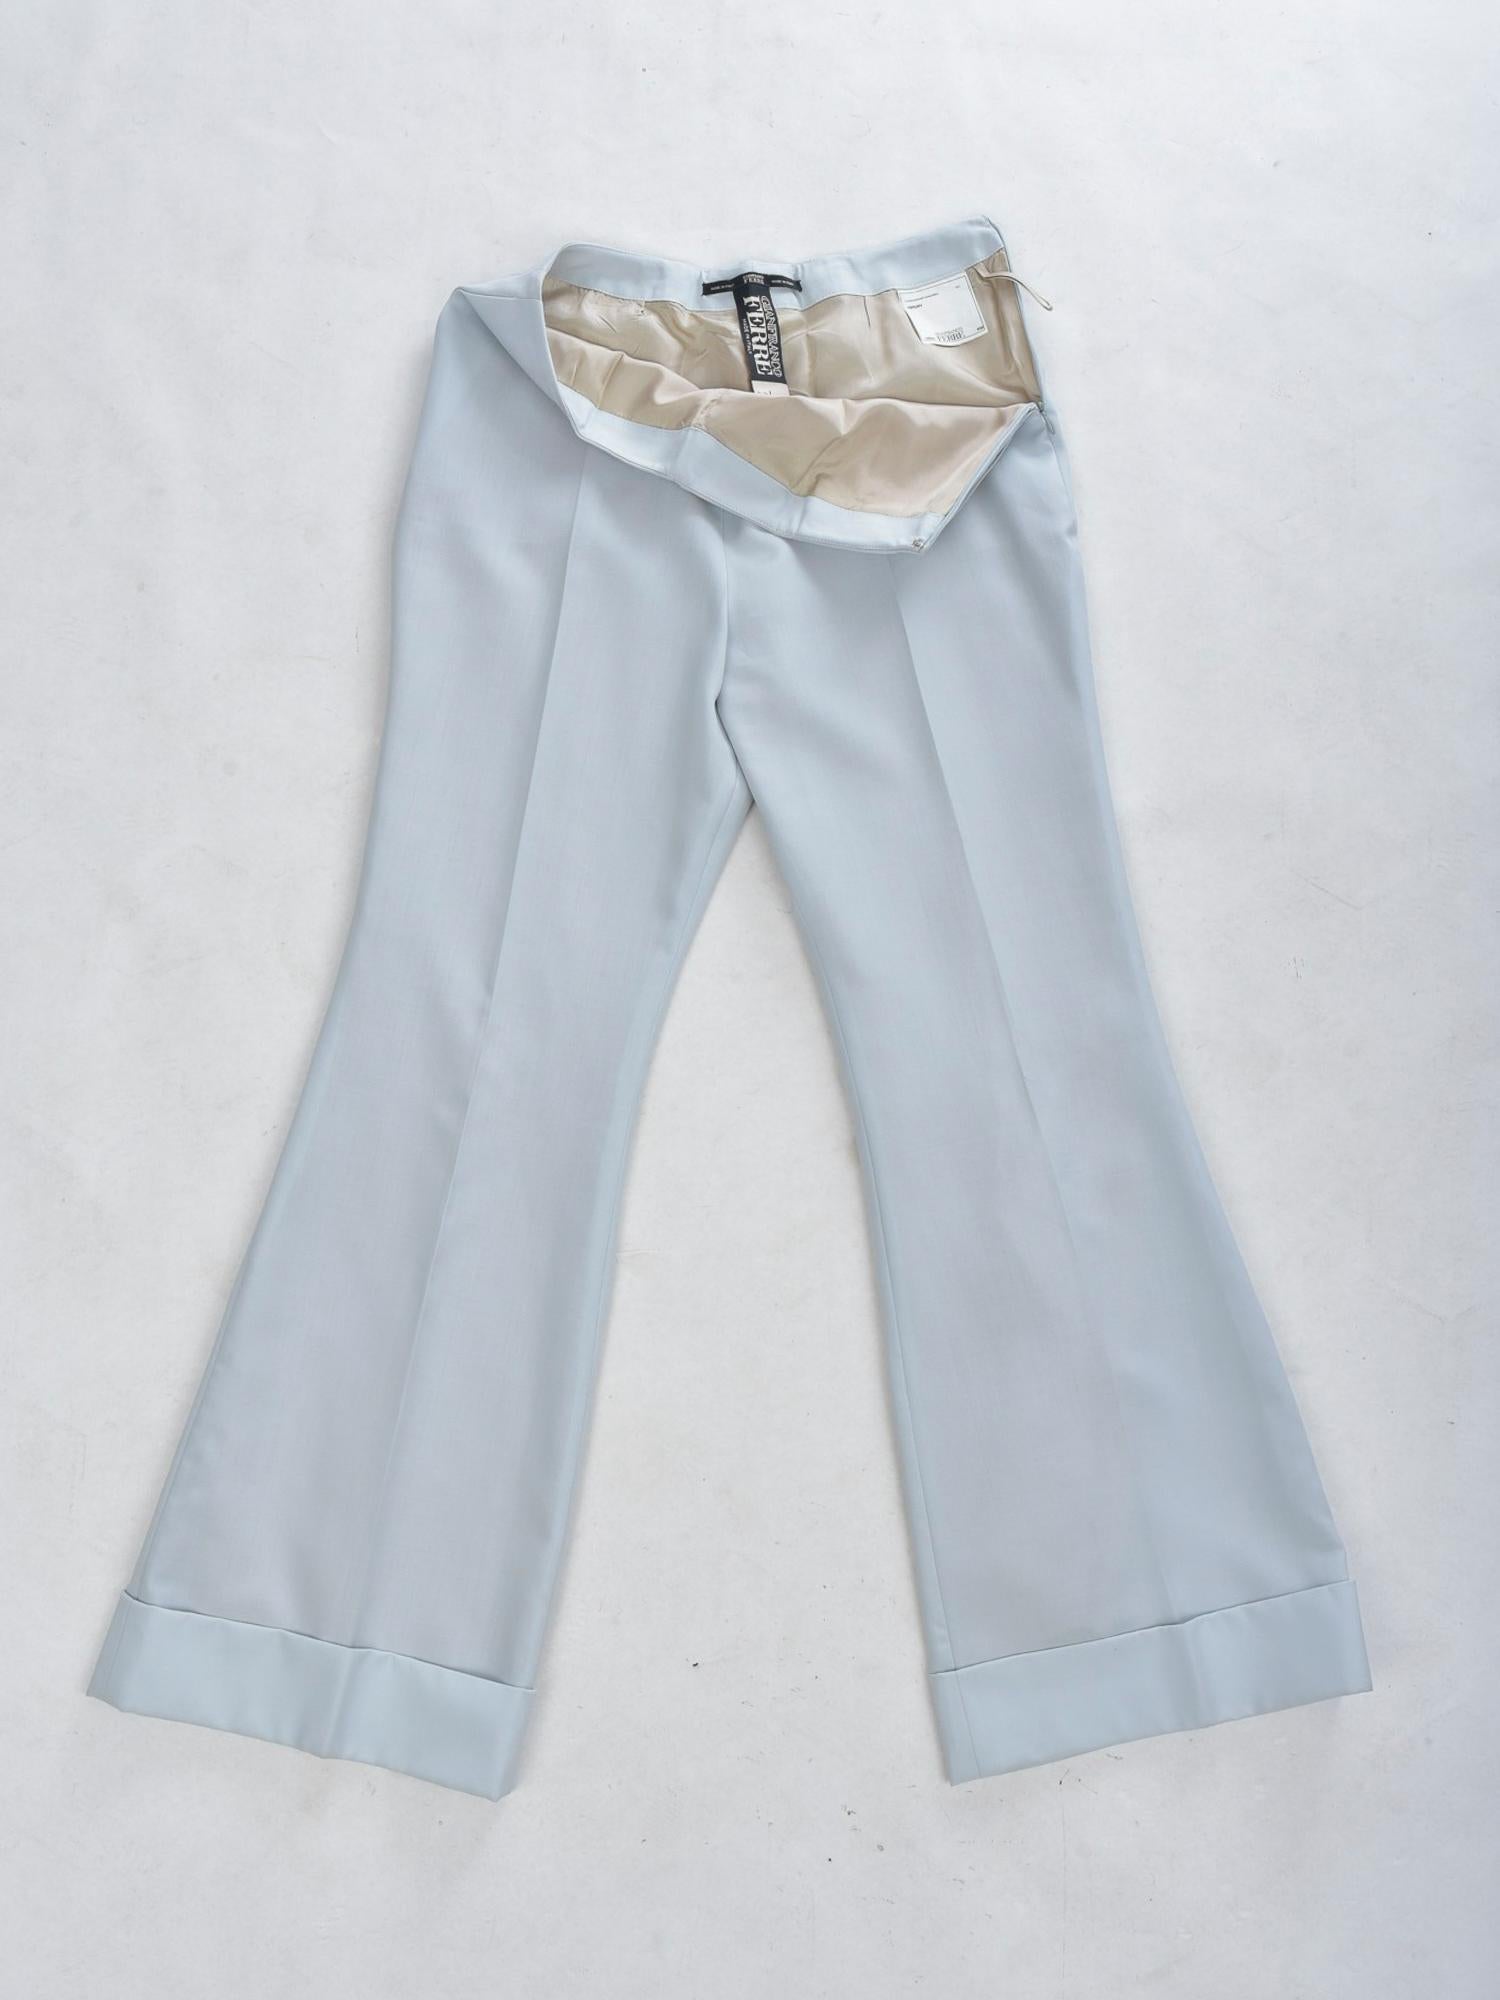 Costume pantalon de smoking bleu glace de Gianfranco Ferre - Italie, circa 1995 - 2000 en vente 1